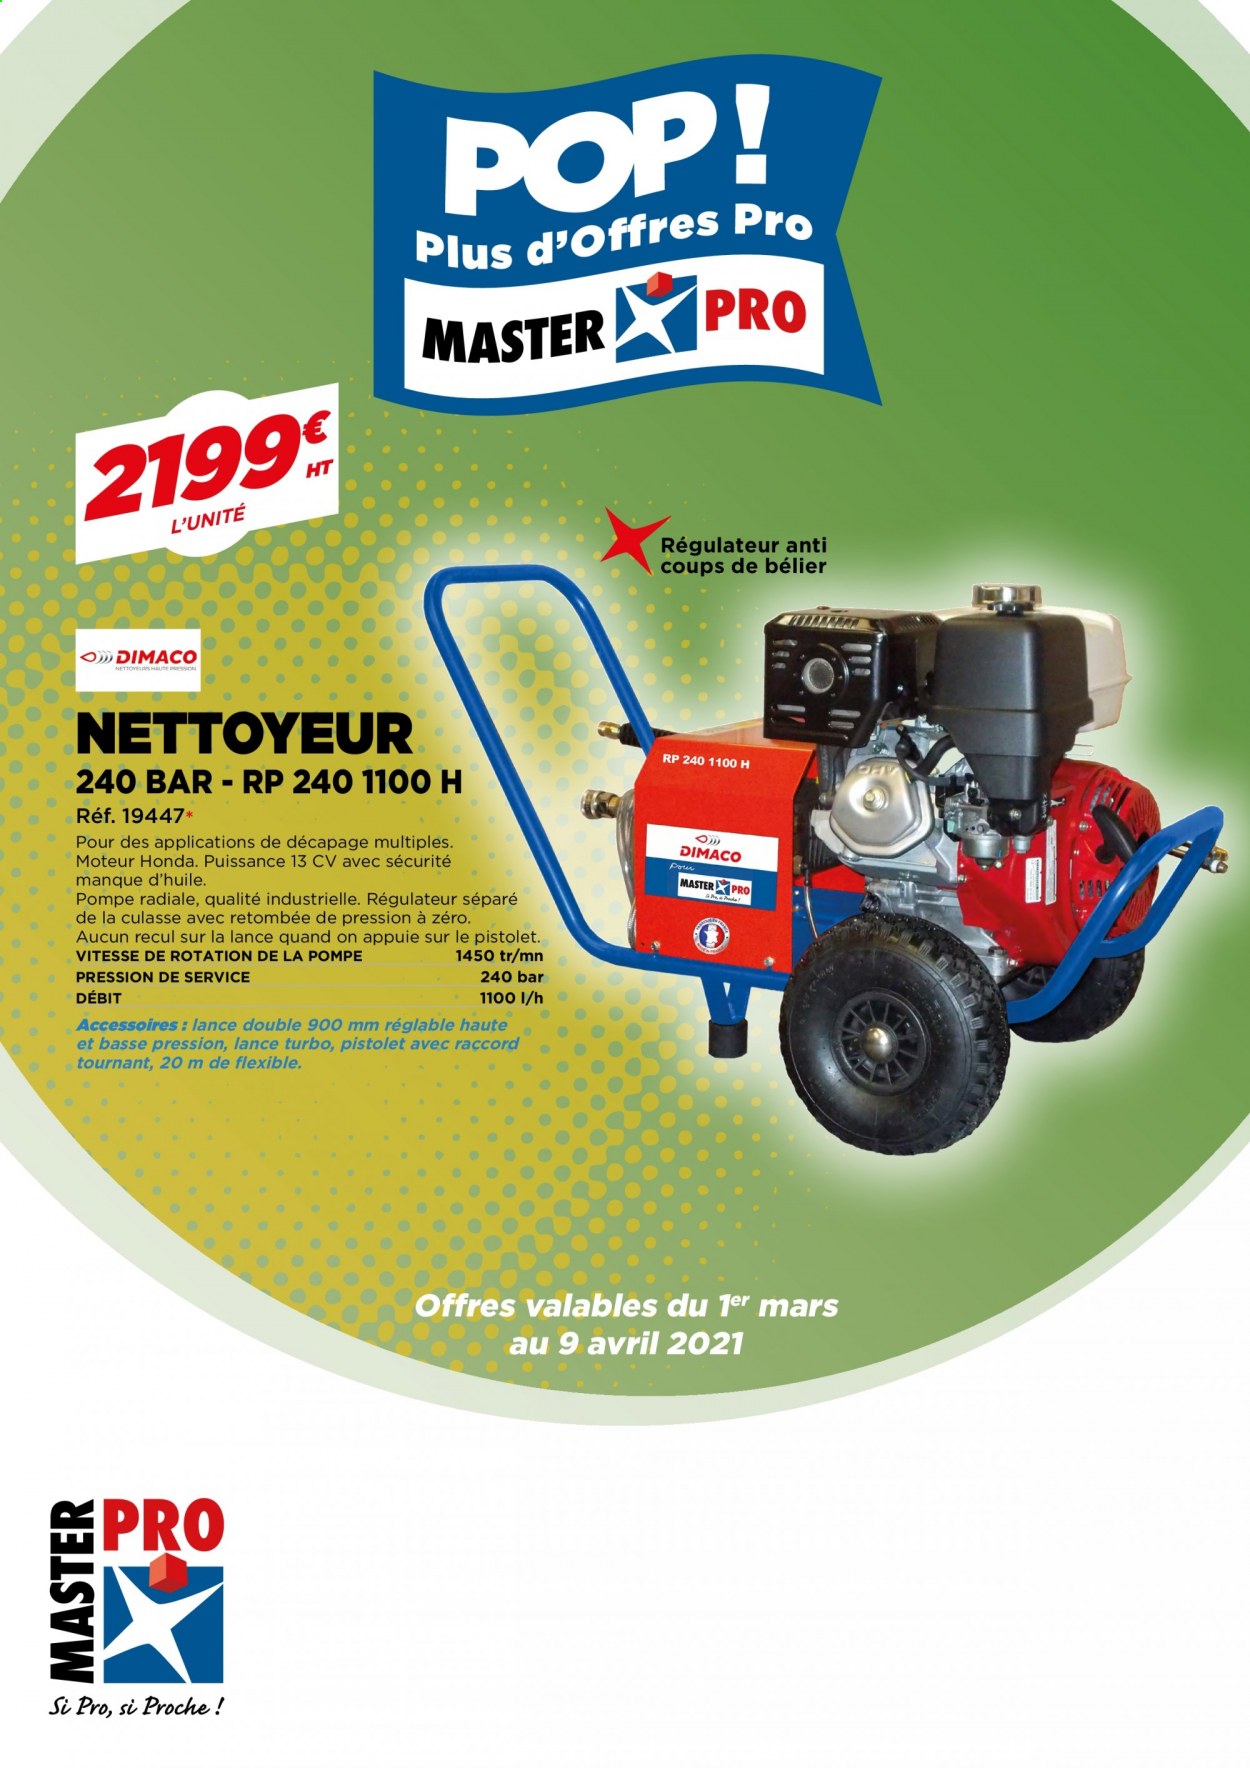 Catalogue Master Pro - 01.03.2021 - 09.04.2021. 